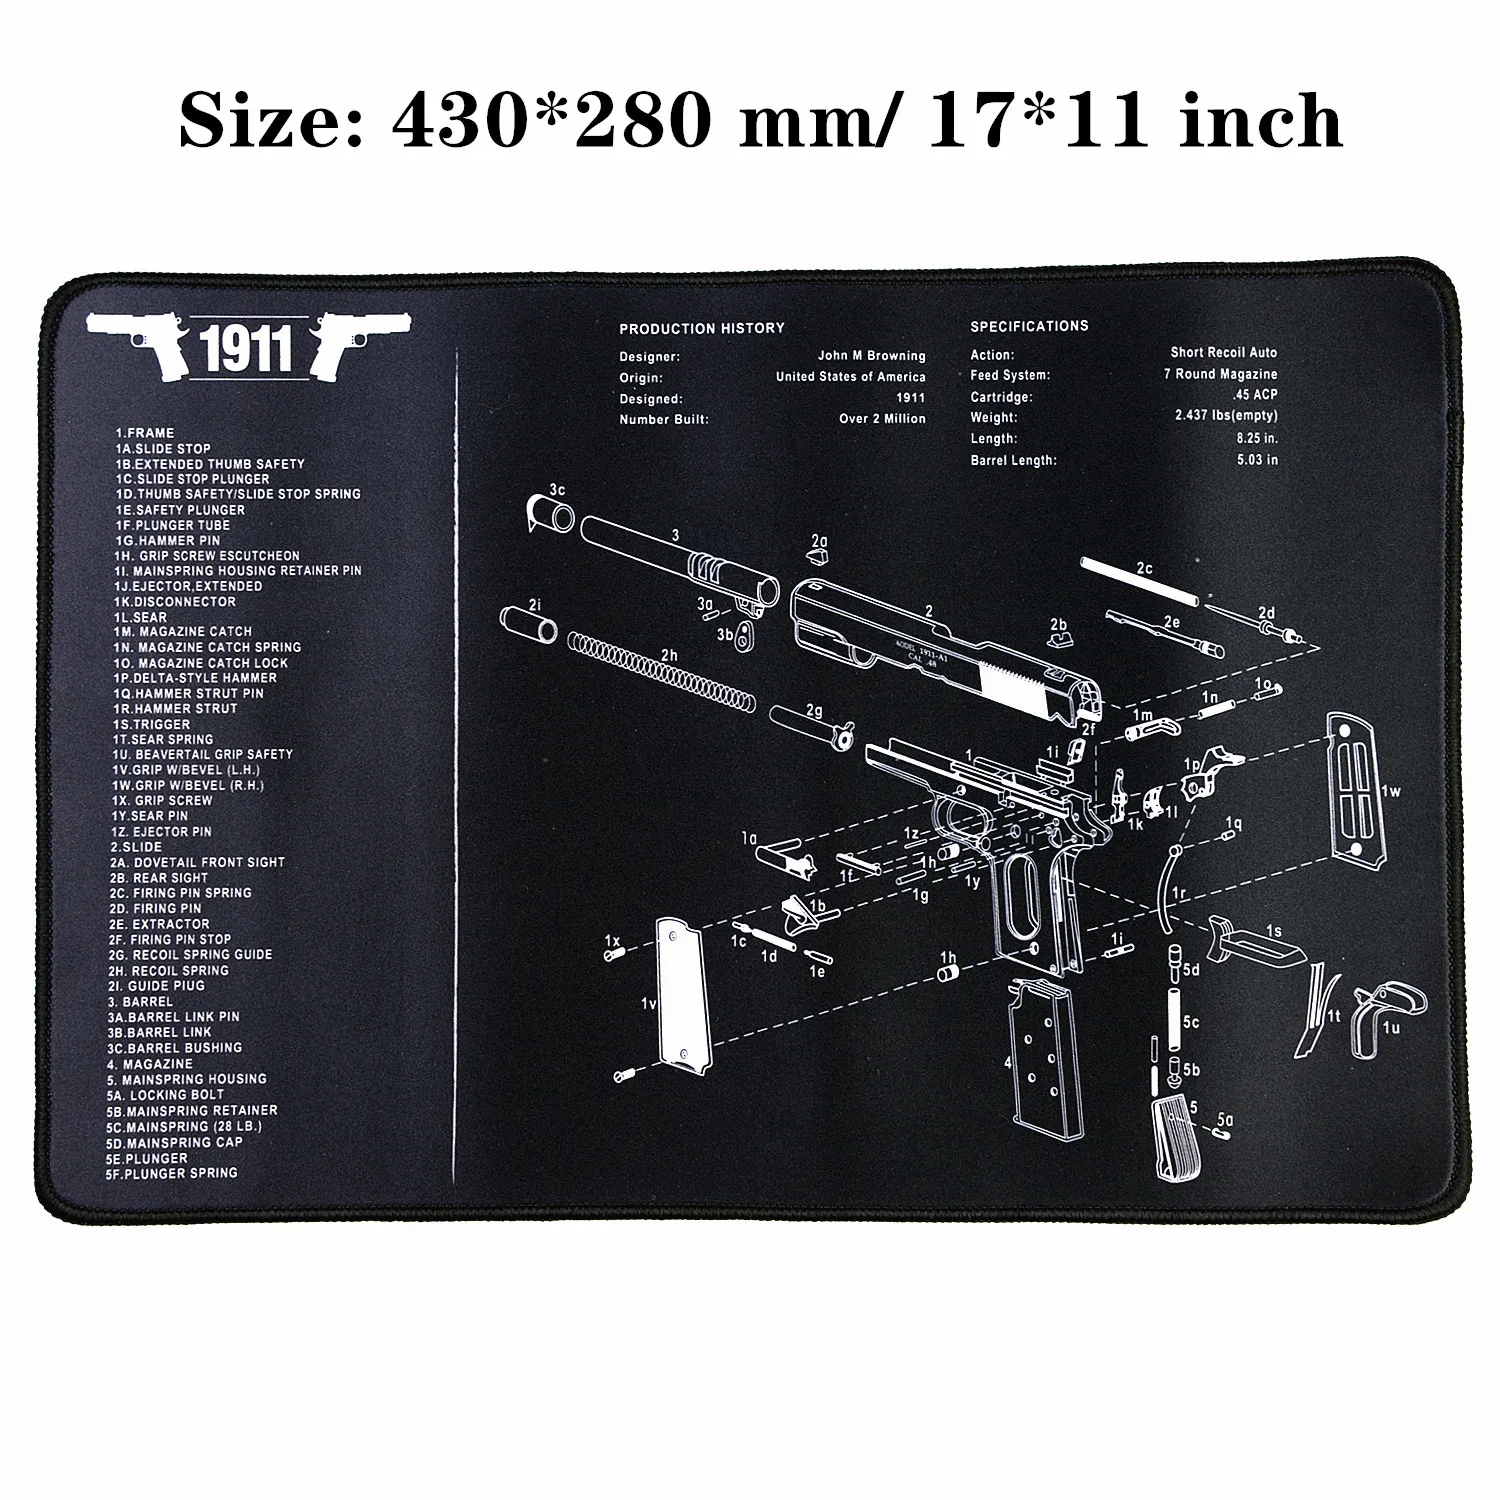 Водостойкий пистолет резиновый коврик для чистки Glock 1911 Beretta HK USP SIG P226 AR15 AK47 Remington с армирующими частями список коврик для верстака - Цвет: 1911